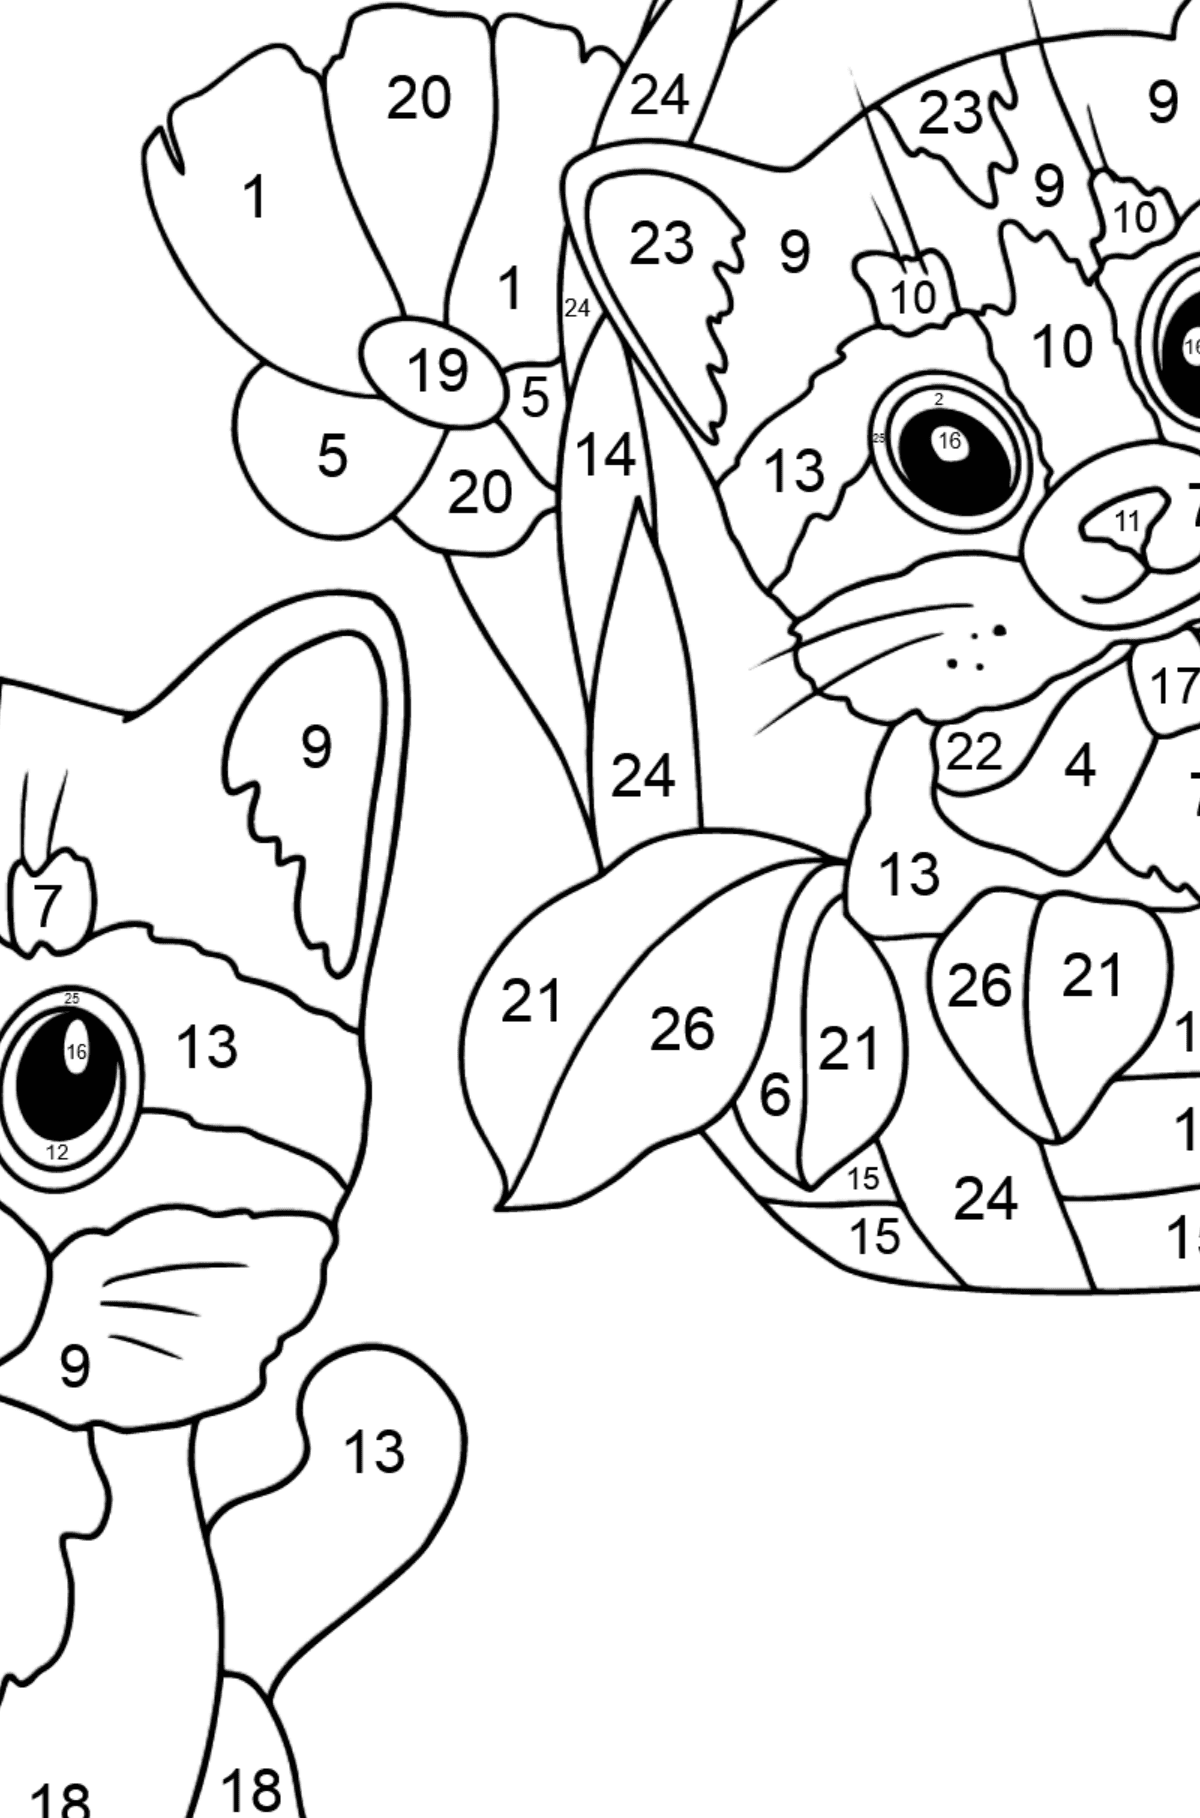 Boyama sayfası küçük kedi yavruları (zor) - Sayılarla Boyama çocuklar için